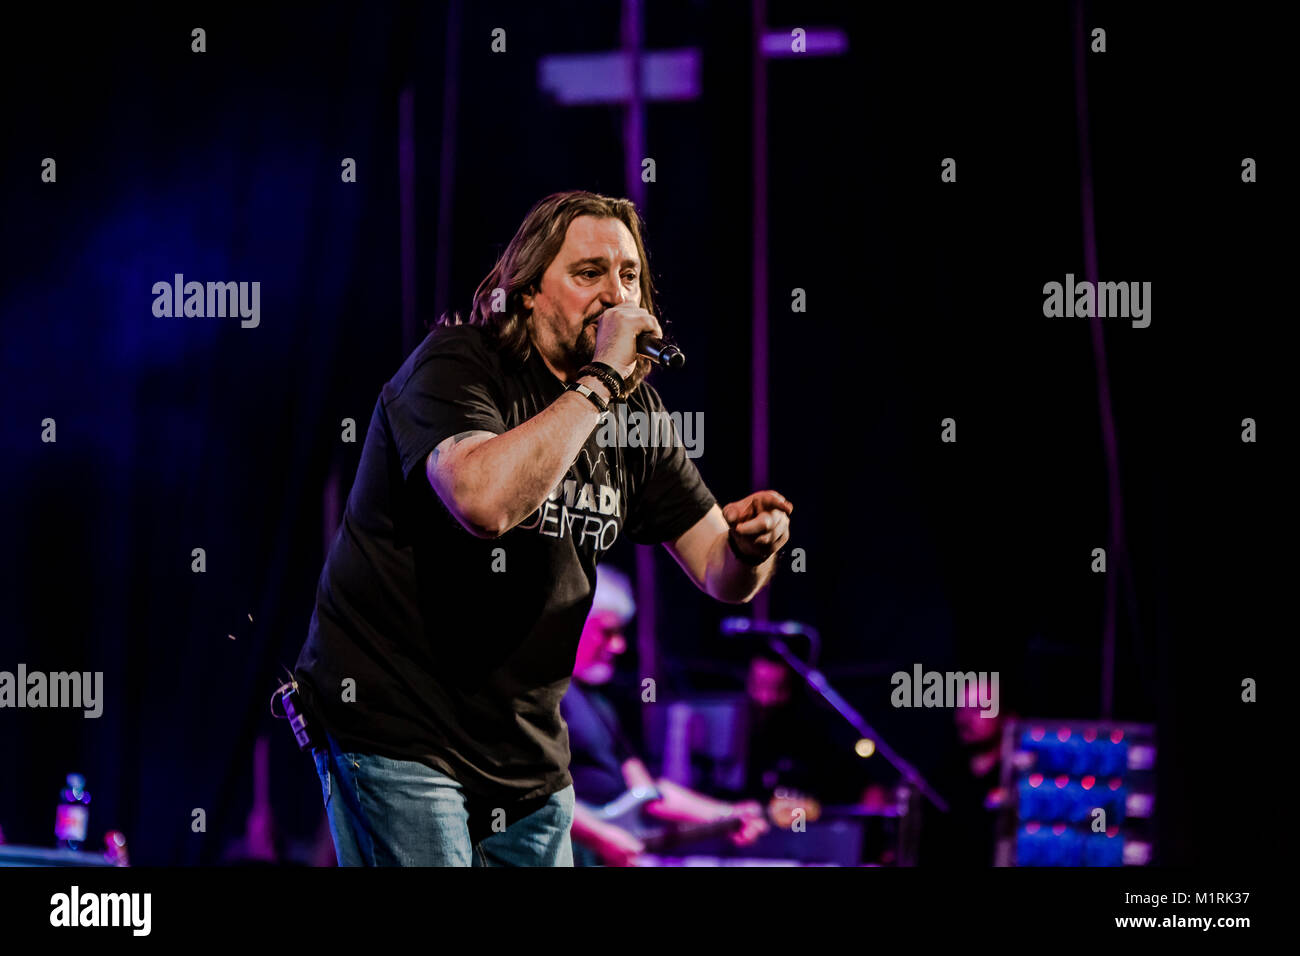 Teatro Duse, Bologna - Italie. Le groupe de rock italien Nomadi, effectuée au cours d'un live de leur dernière tournée. Luigi Rizzo Crédit/Alamy Live News Banque D'Images